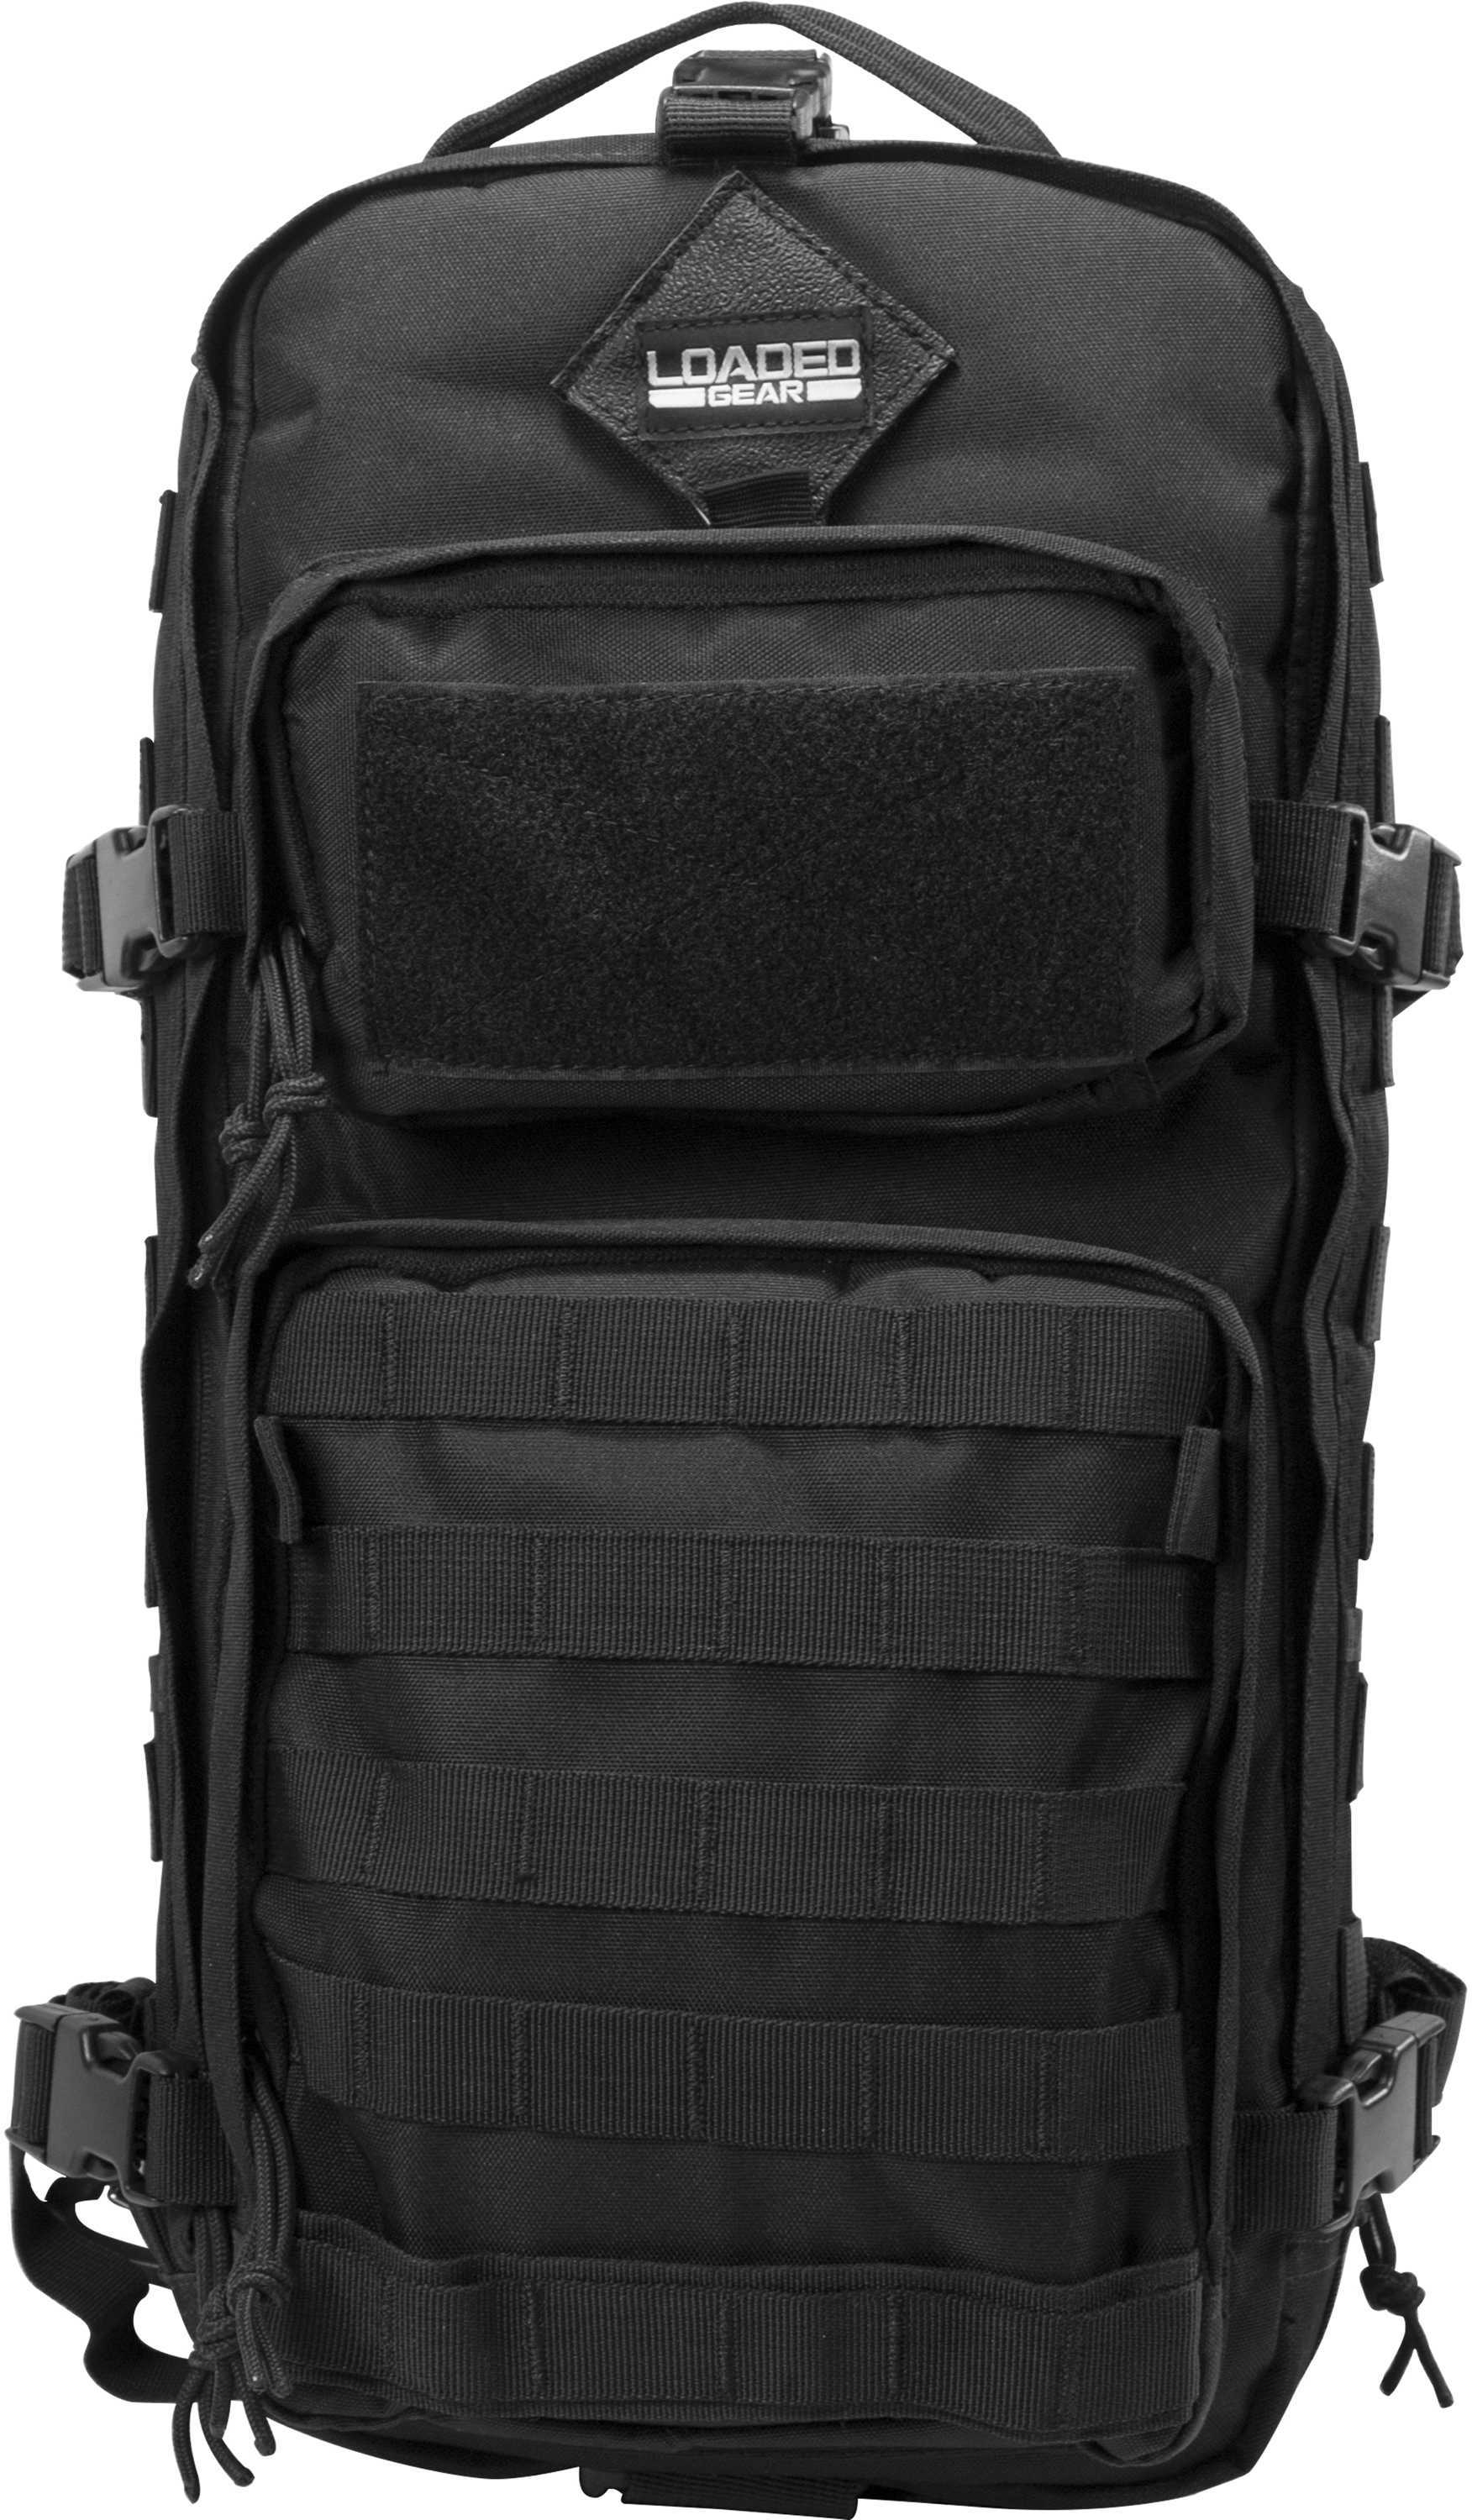 Barska Optics Loaded Gear Tactical Backpack GX-300 BI12026